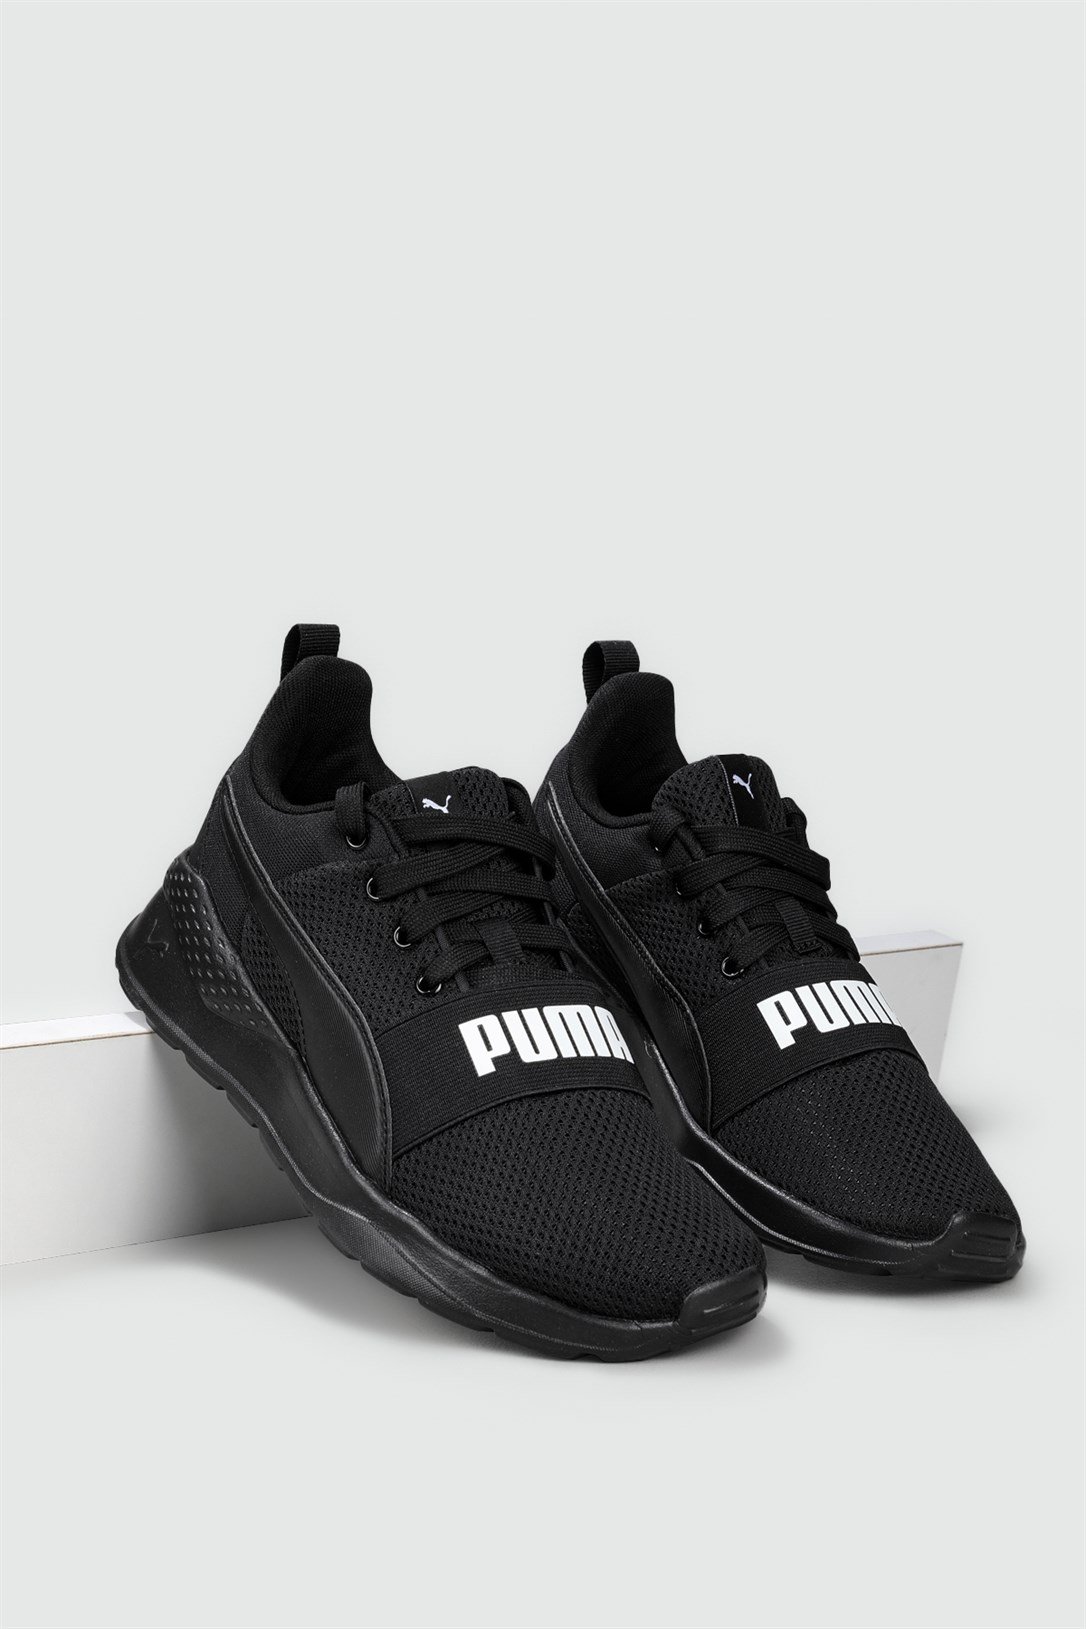 Puma Nefes Alır Ortopedik Siyah Erkek Spor Ayakkabı 372362-01 | Ayakkabı  City